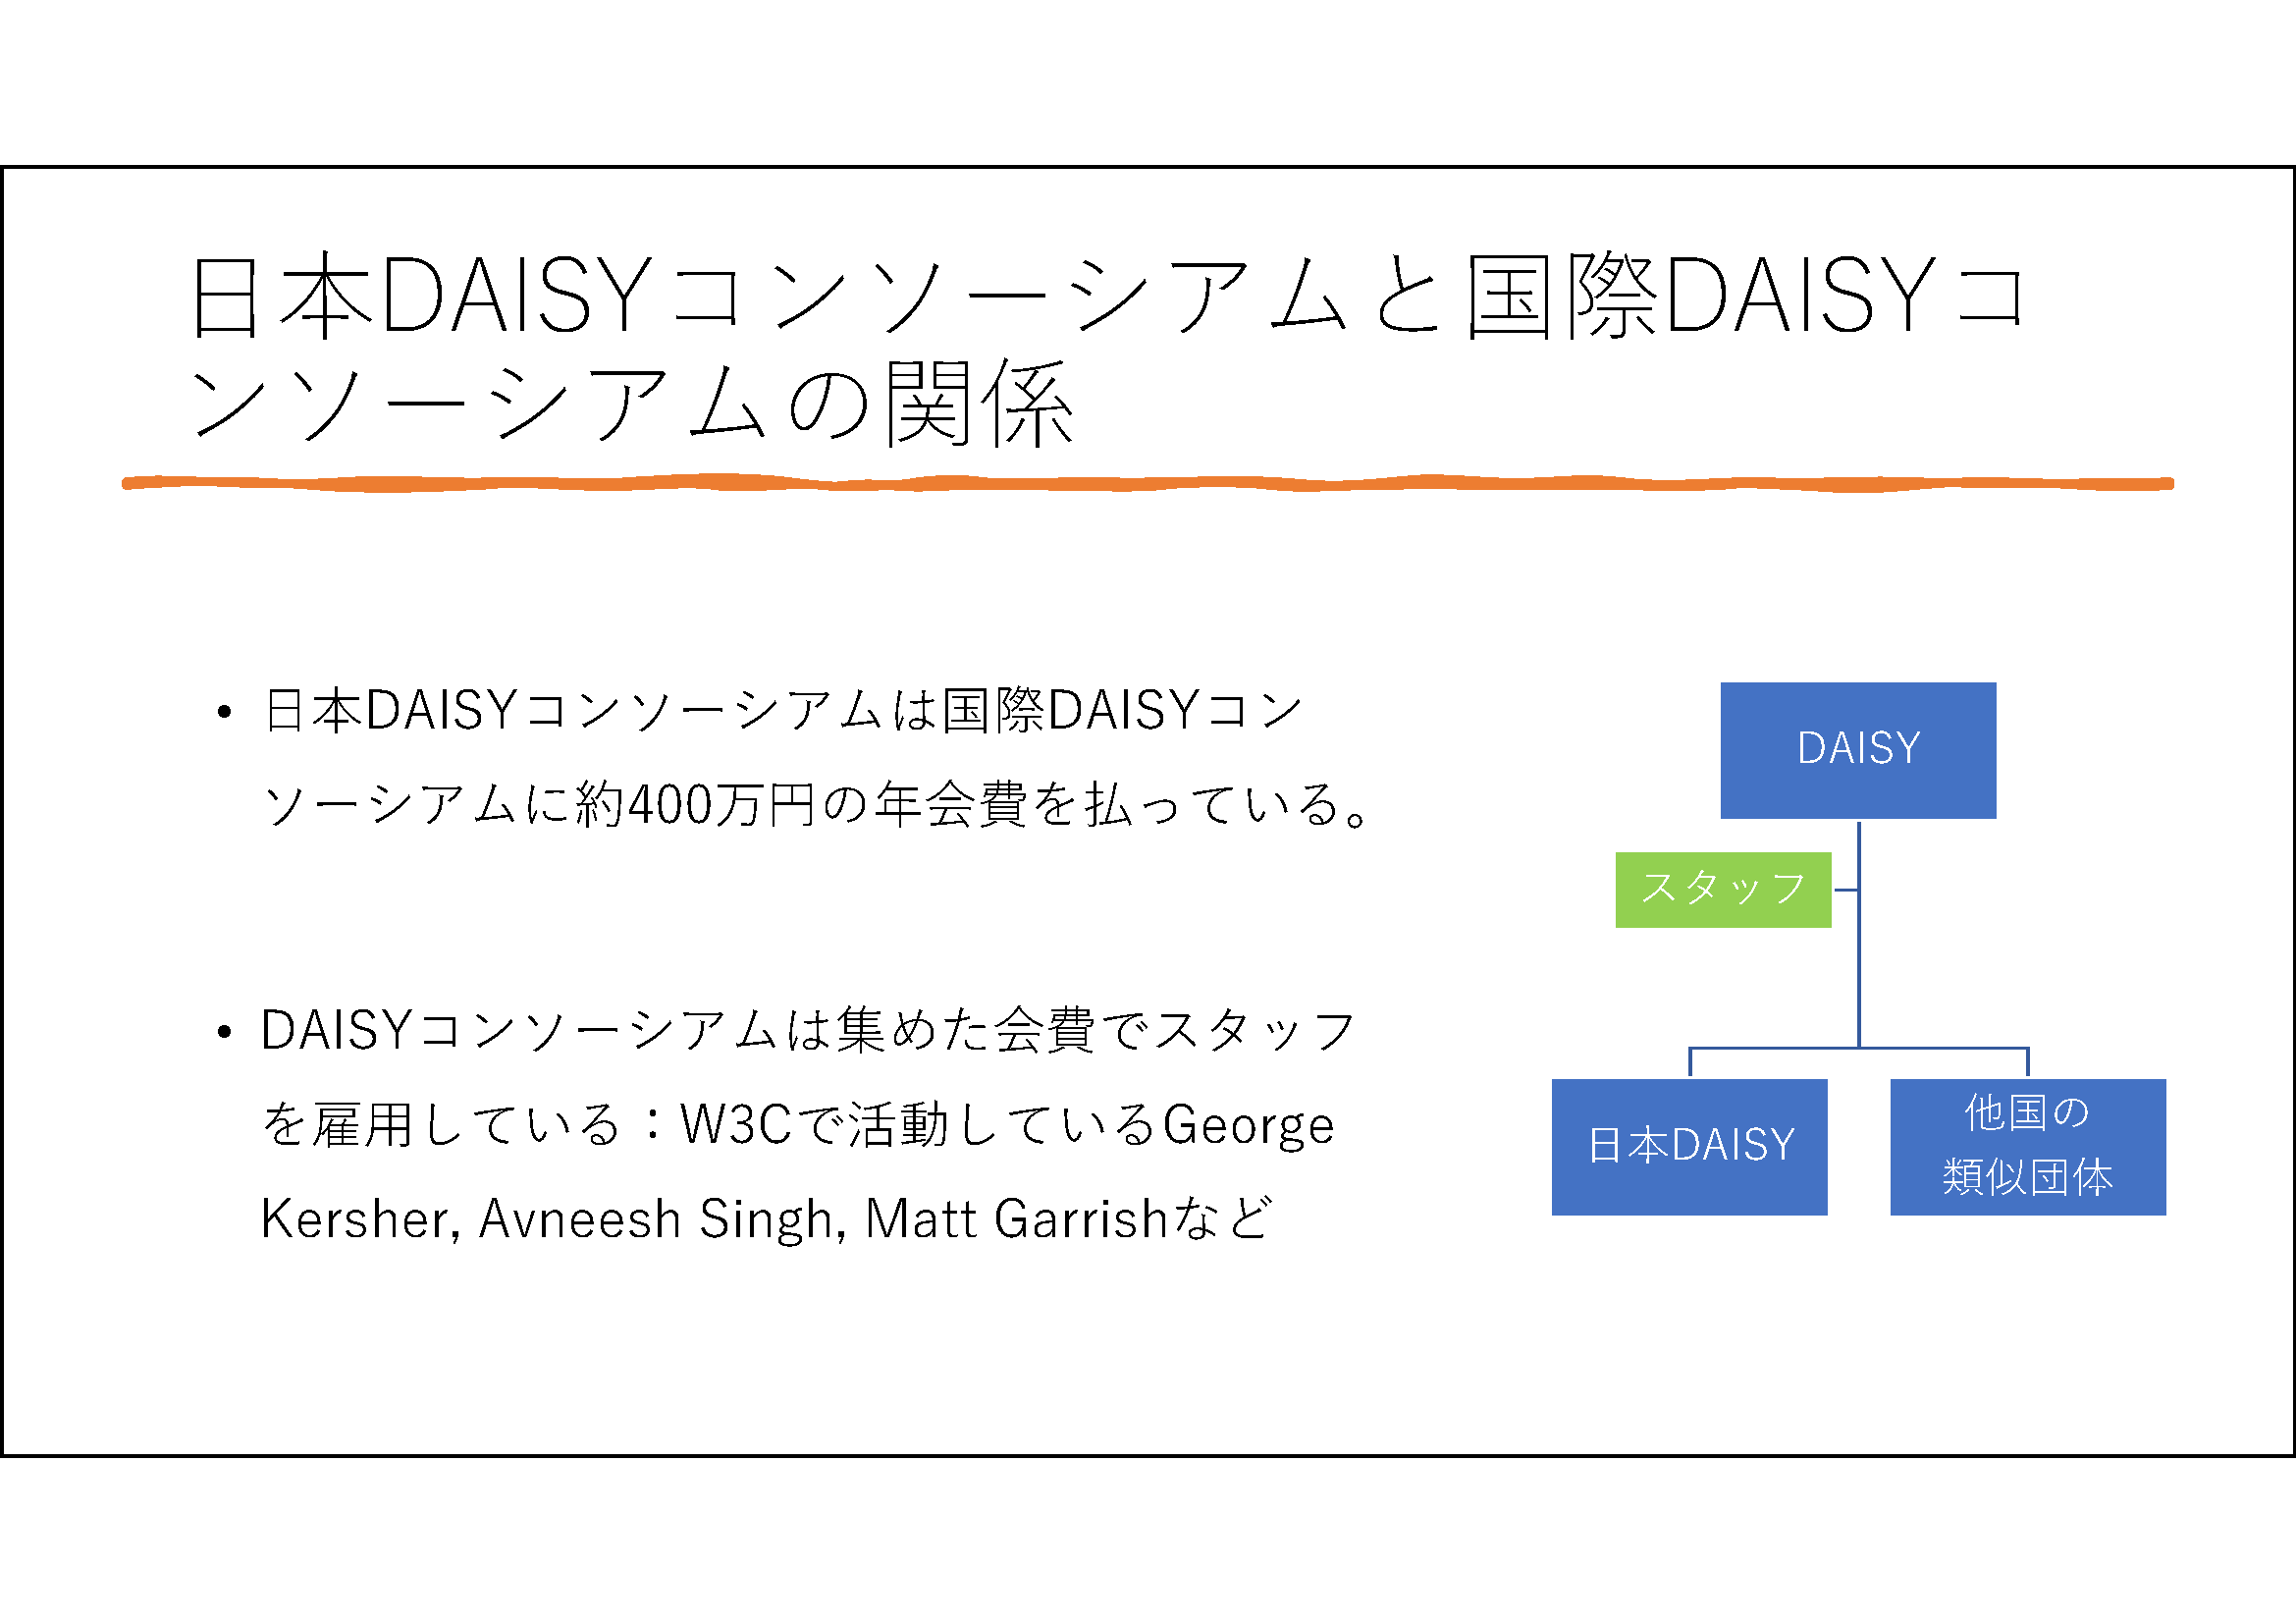 日本DAISYコンソーシアムと国際DAISYコンソーシアムの関係
日本DAISYコンソーシアムは国際DAISYコンソーシアムに約400万円の年会費を払っている。

DAISYコンソーシアムは集めた会費でスタッフを雇用している：W3Cで活動しているGeorge Kersher, Avneesh Singh, Matt Garrishなど

右に、「DAISY」、「DAISYで雇用されているスタッフ」、「日本DAISY」、「他国の類似団体」の関係が図で示されています。
